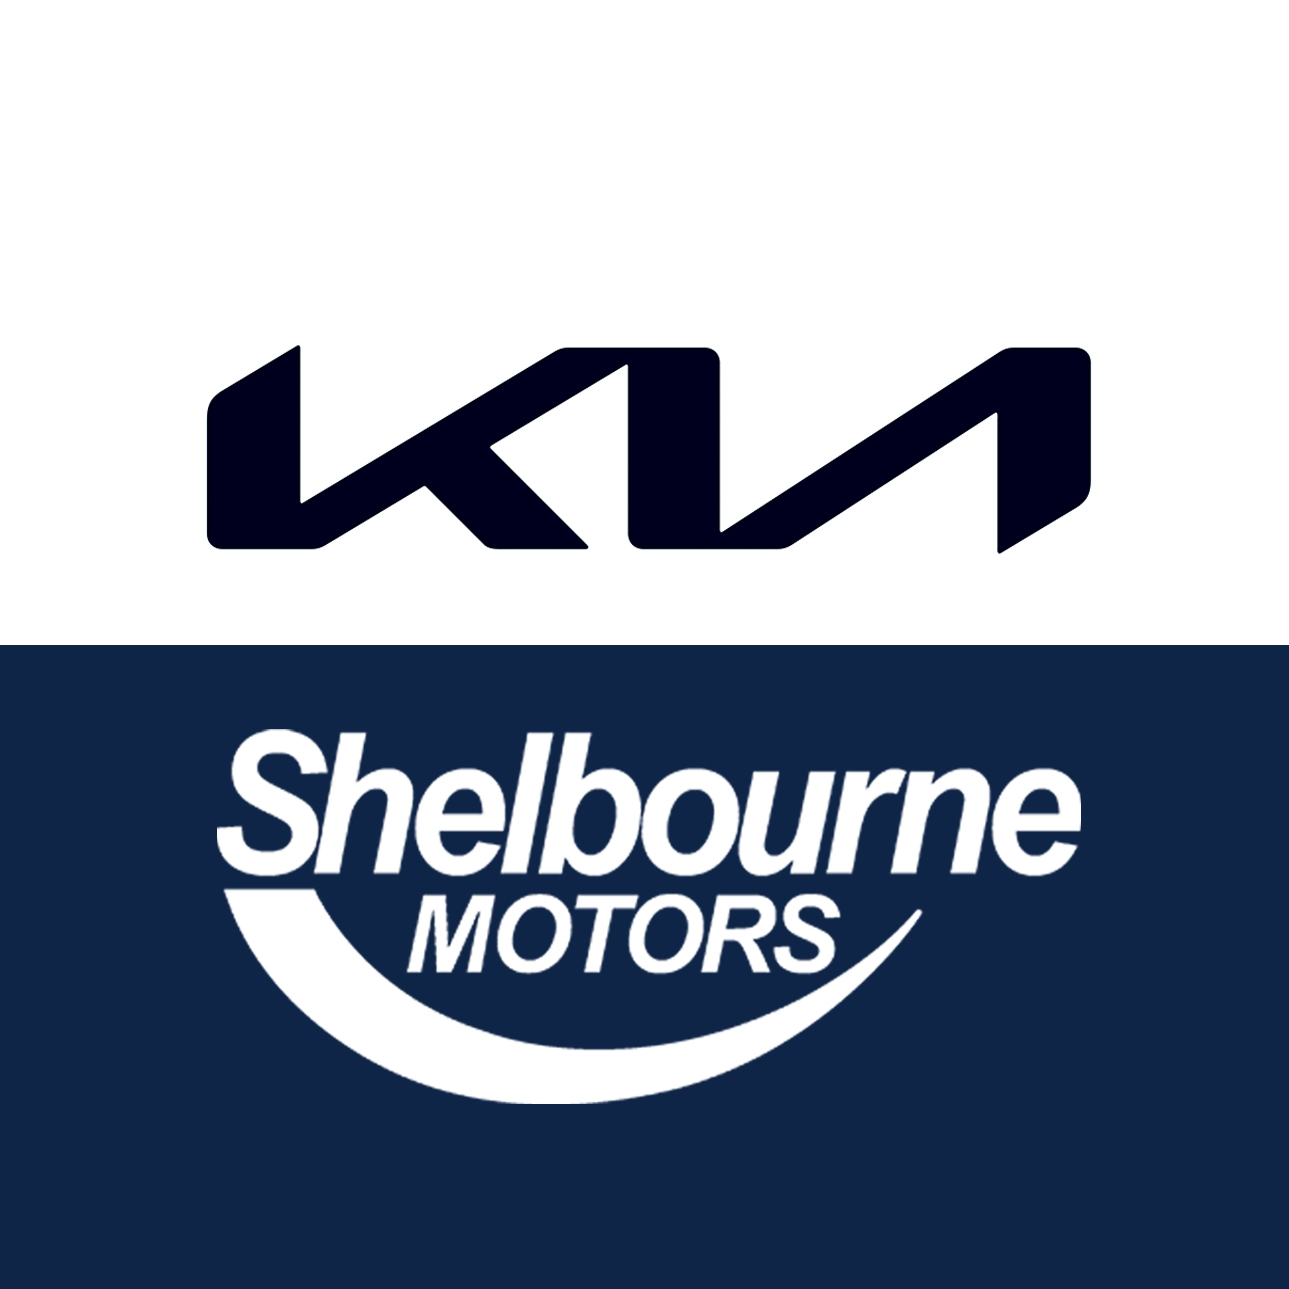 Shelbourne Motors Kia